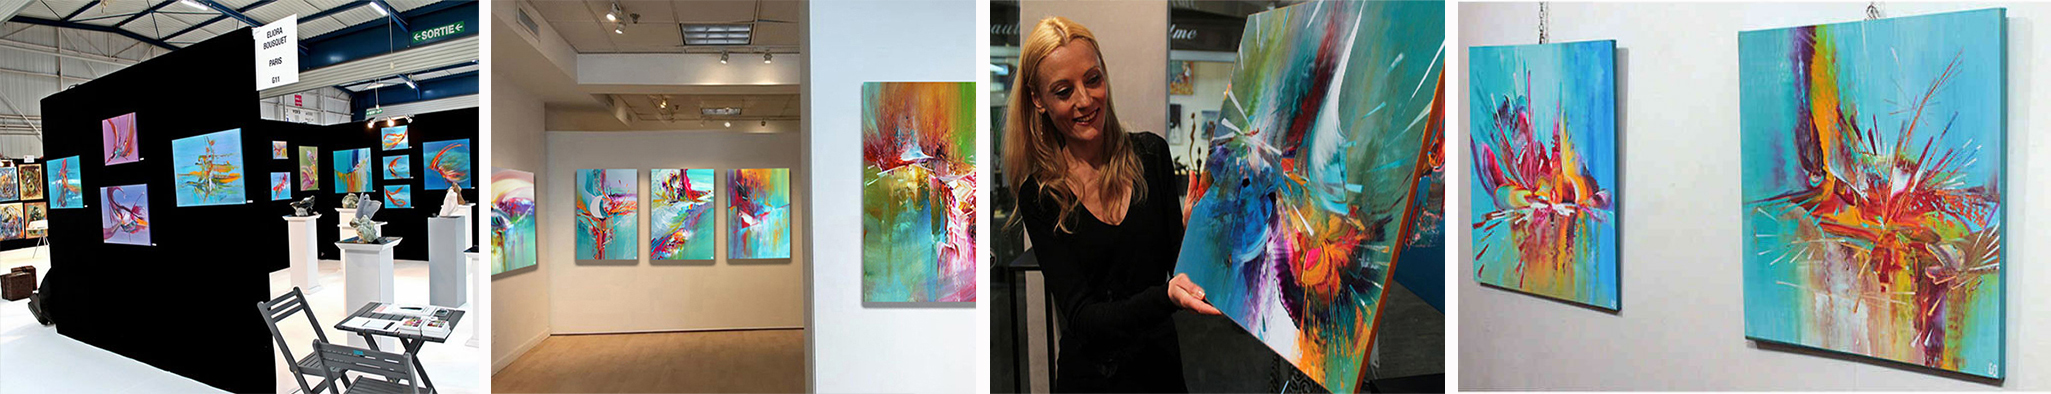 L'artiste-Peintre Eliora Bousquet présente ses tableaux lors d'expositions de peinture